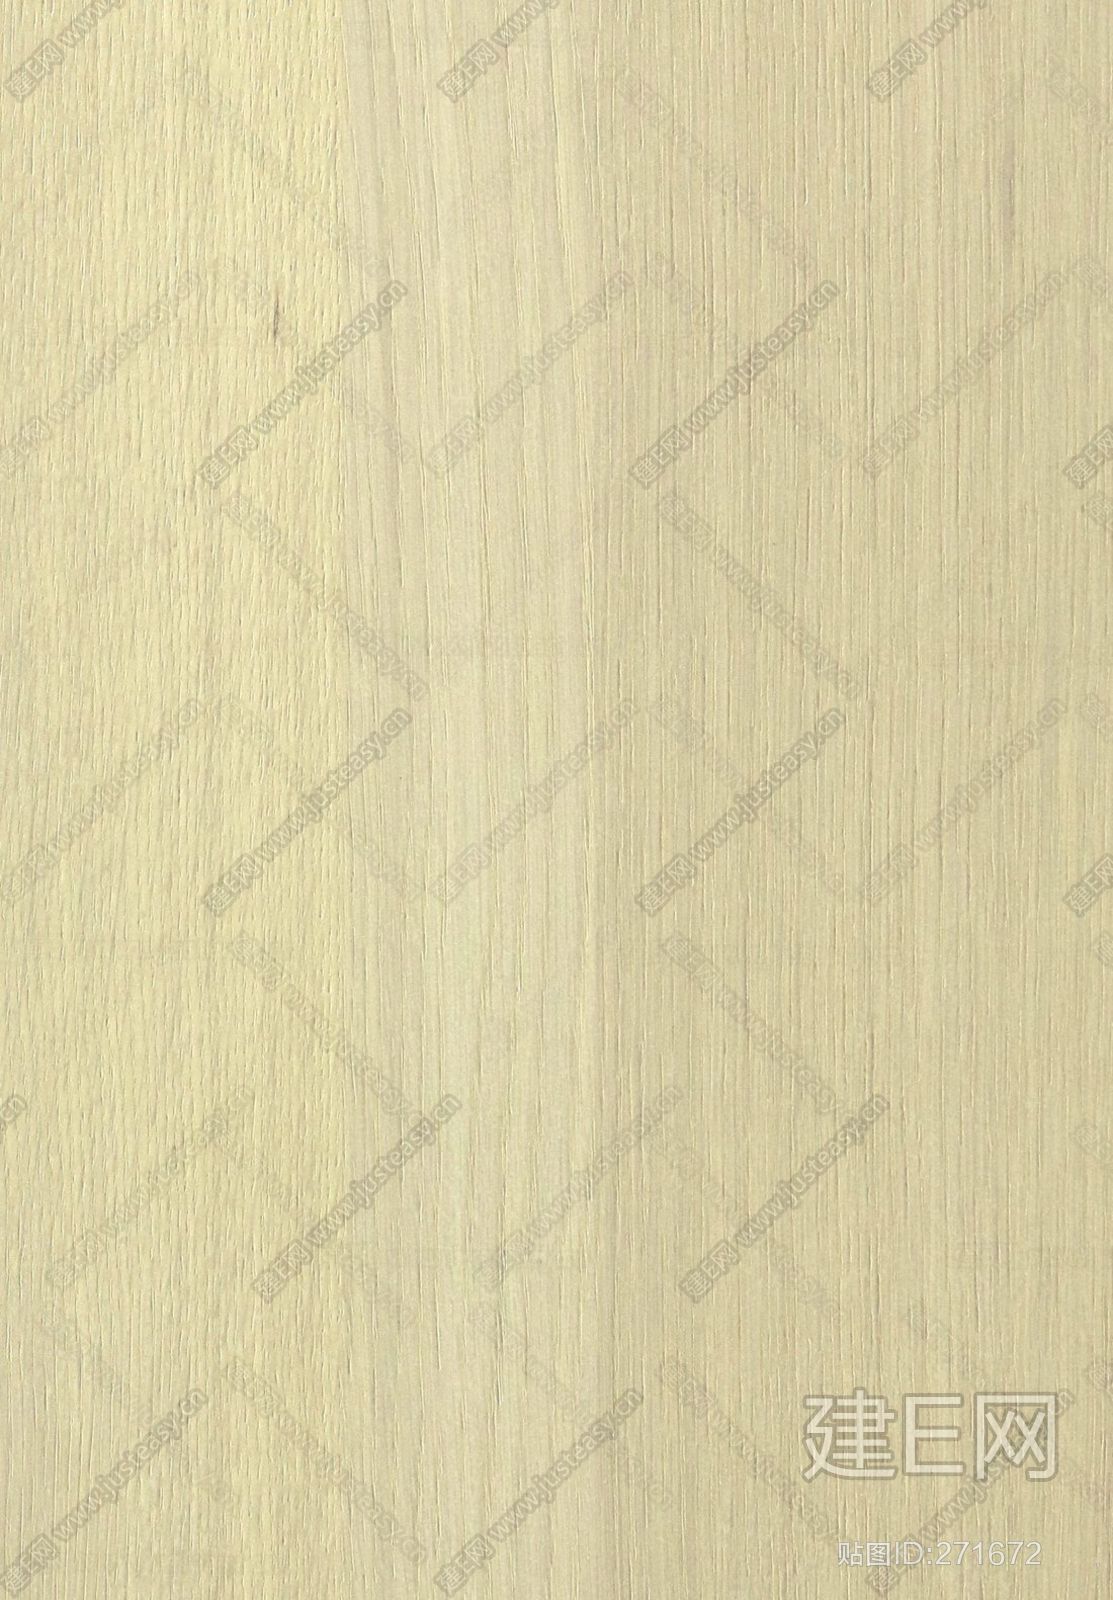 梵品木饰面白橡木系列贴图